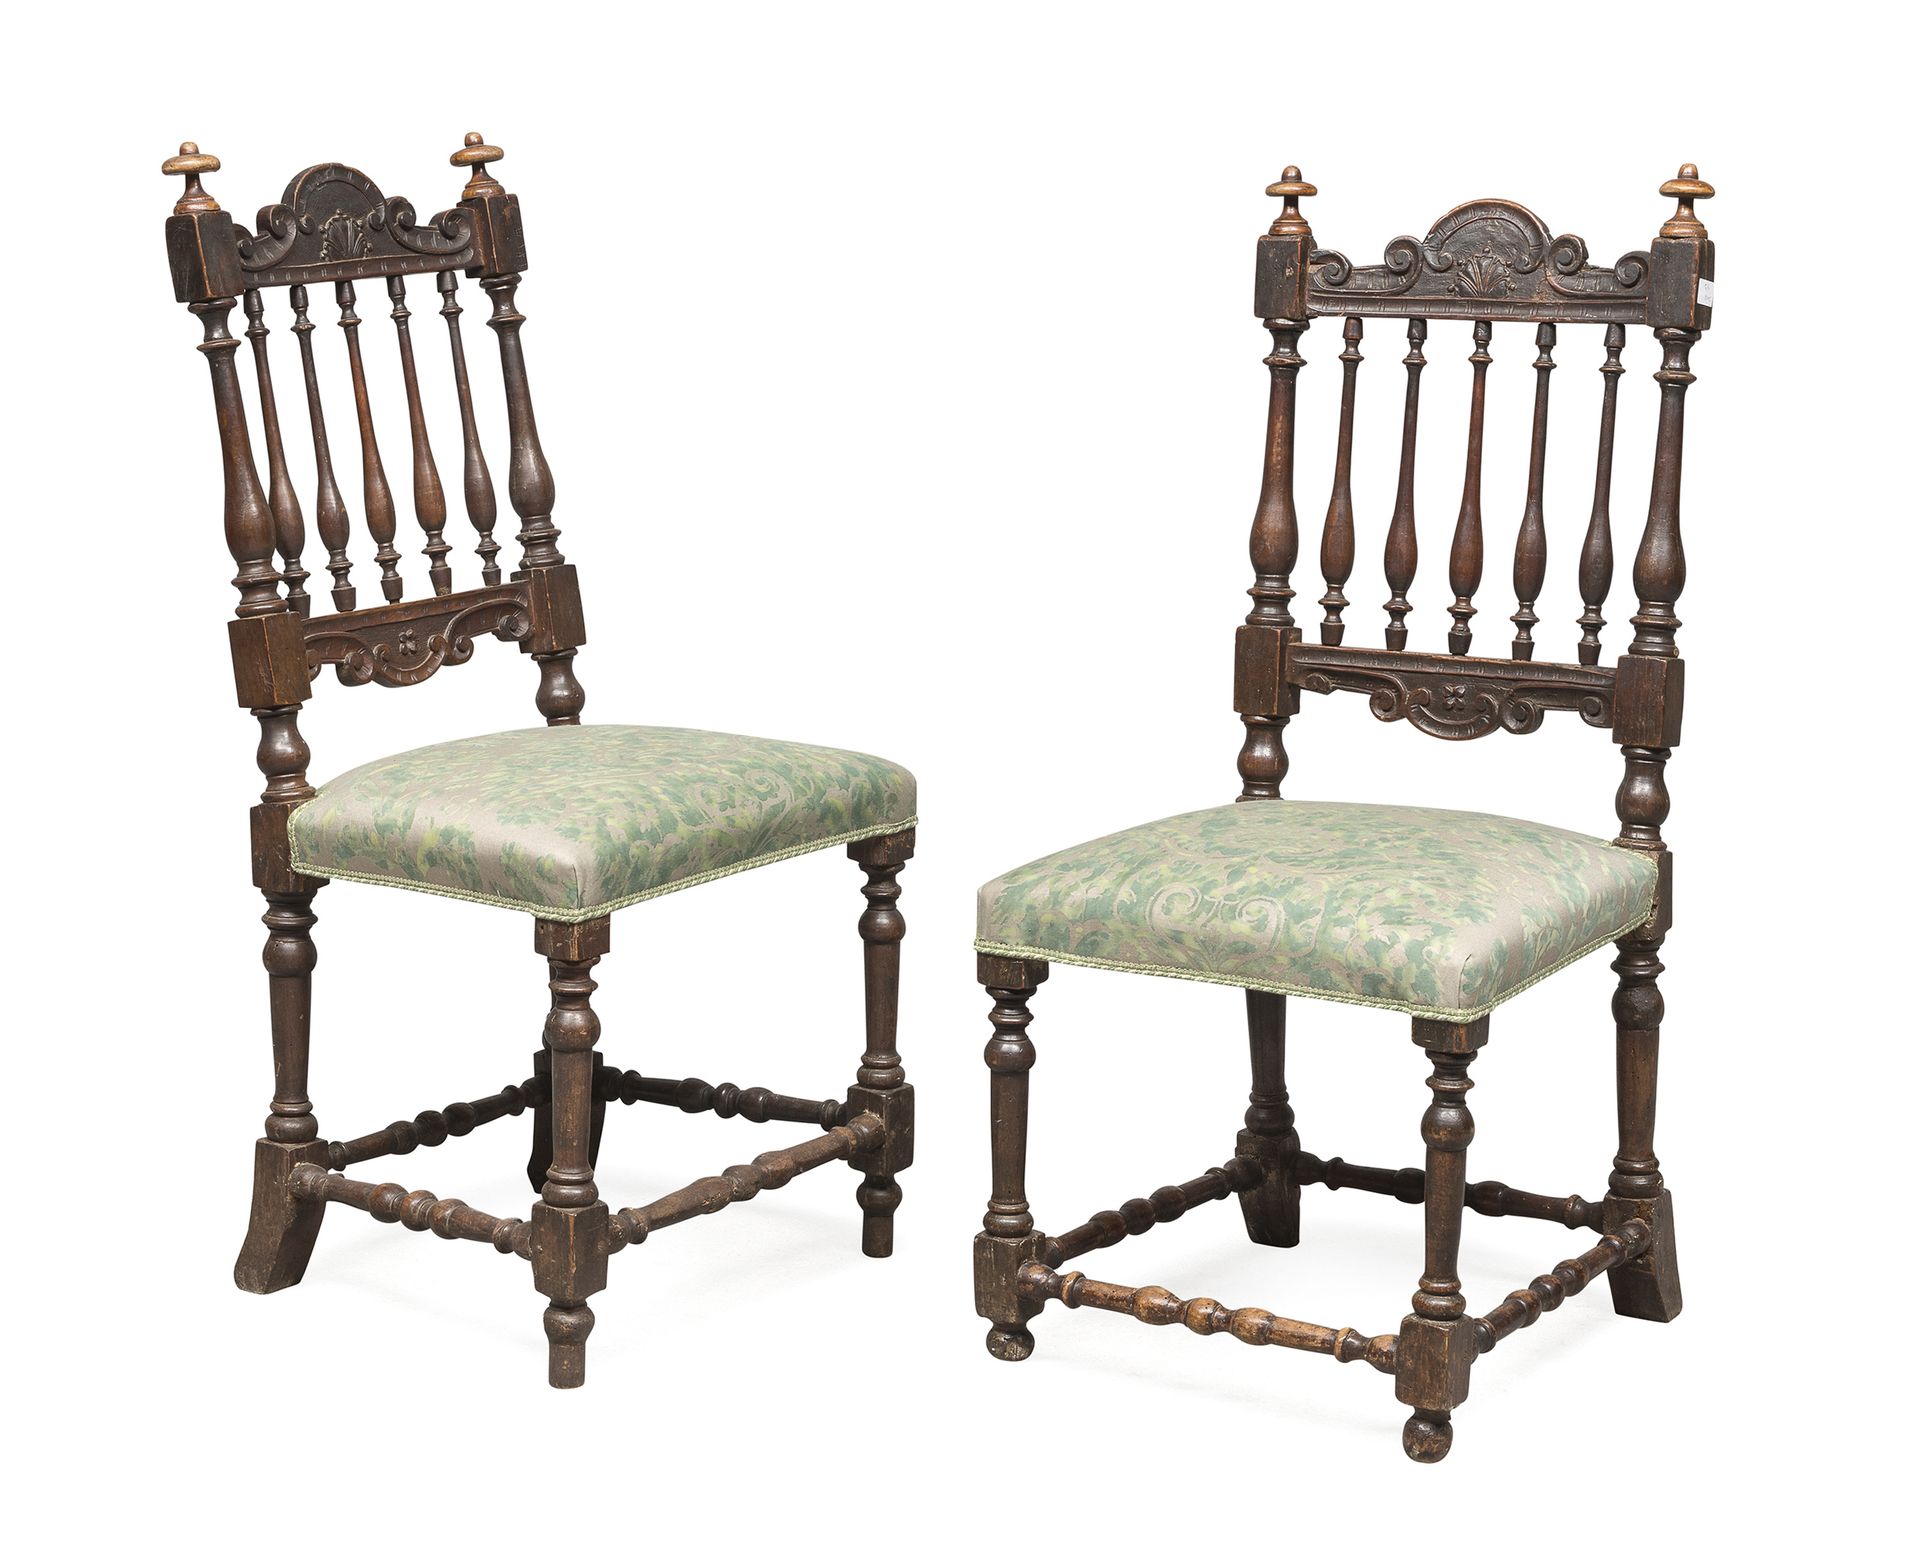 Null 一对胡桃木椅子，威尼托 18世纪

有栏杆的背面，雕刻有尖顶的涡旋顶部。带线轴的支腿和横杆。

尺寸为108 x 48 x 44厘米。